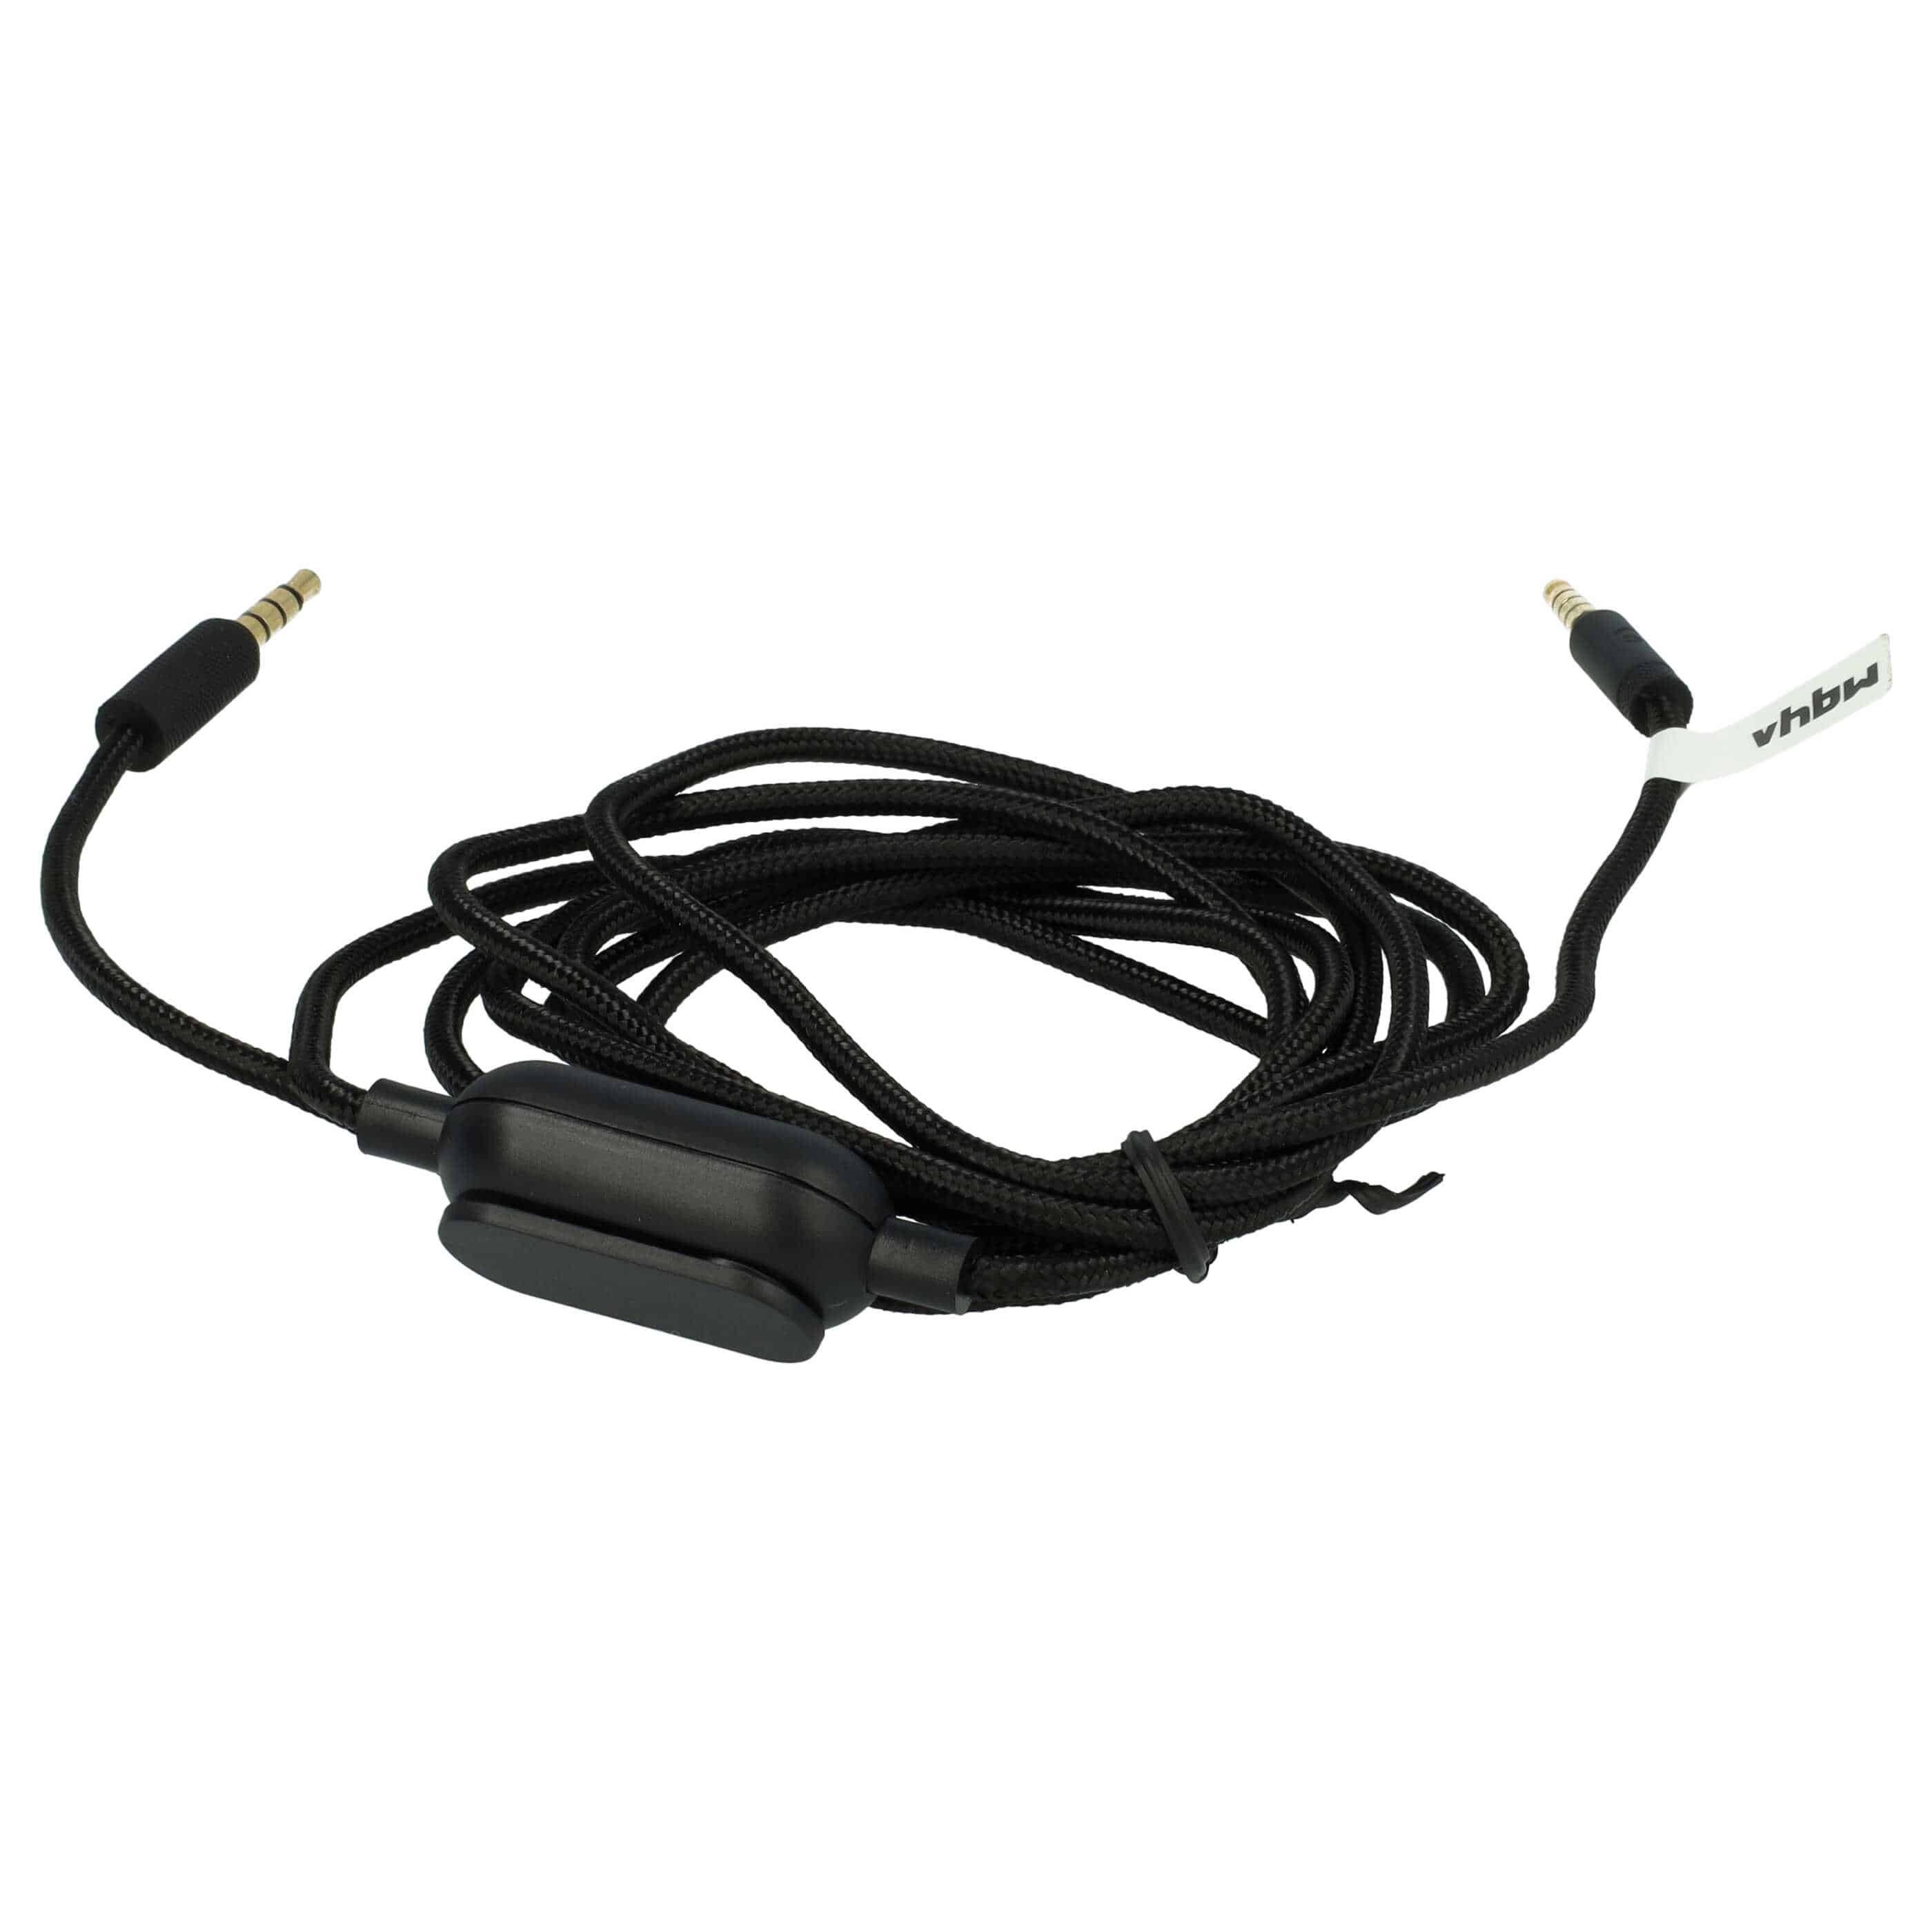 Headphones Cable suitable for Logitech G Pro etc., 200 cm